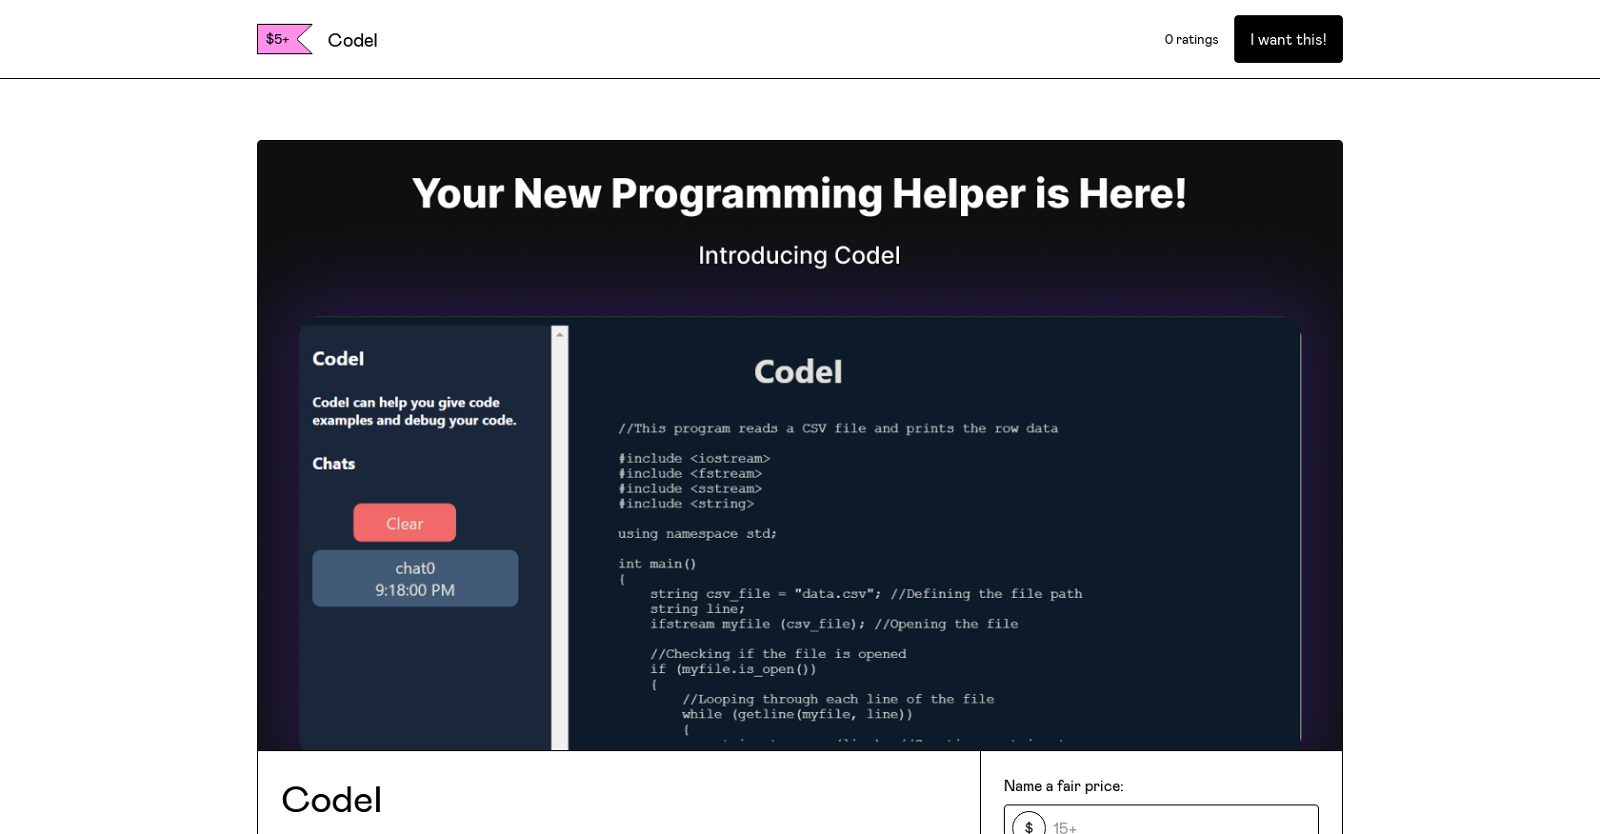 Codel website